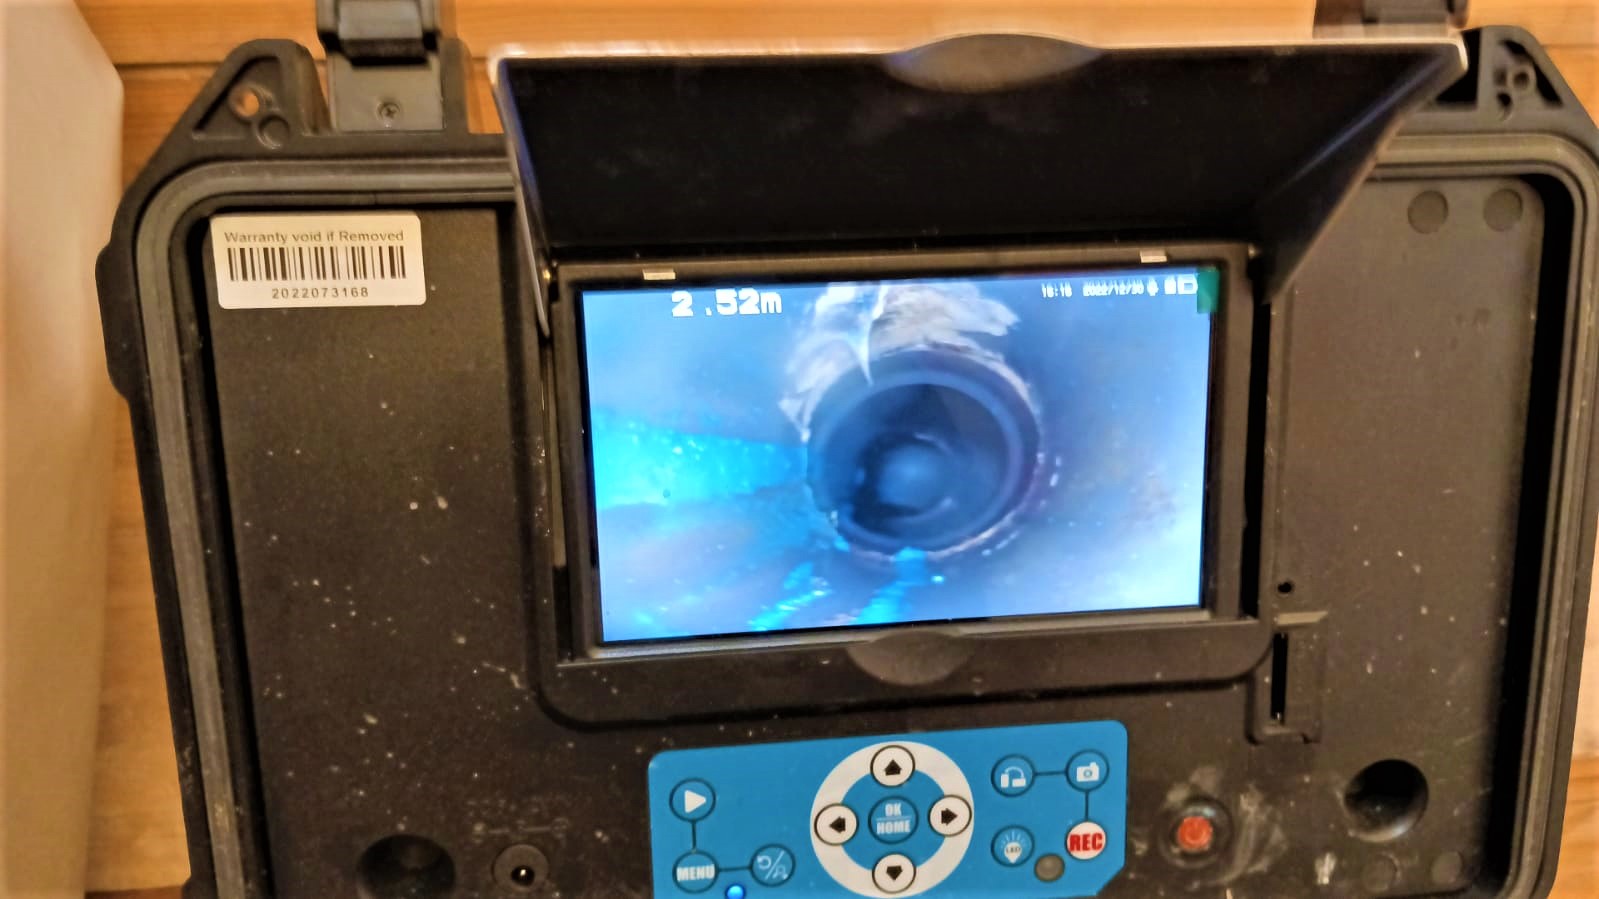 מצלמה תרמית עבור צילום מערכות ביוב - יוני אינסטלטור